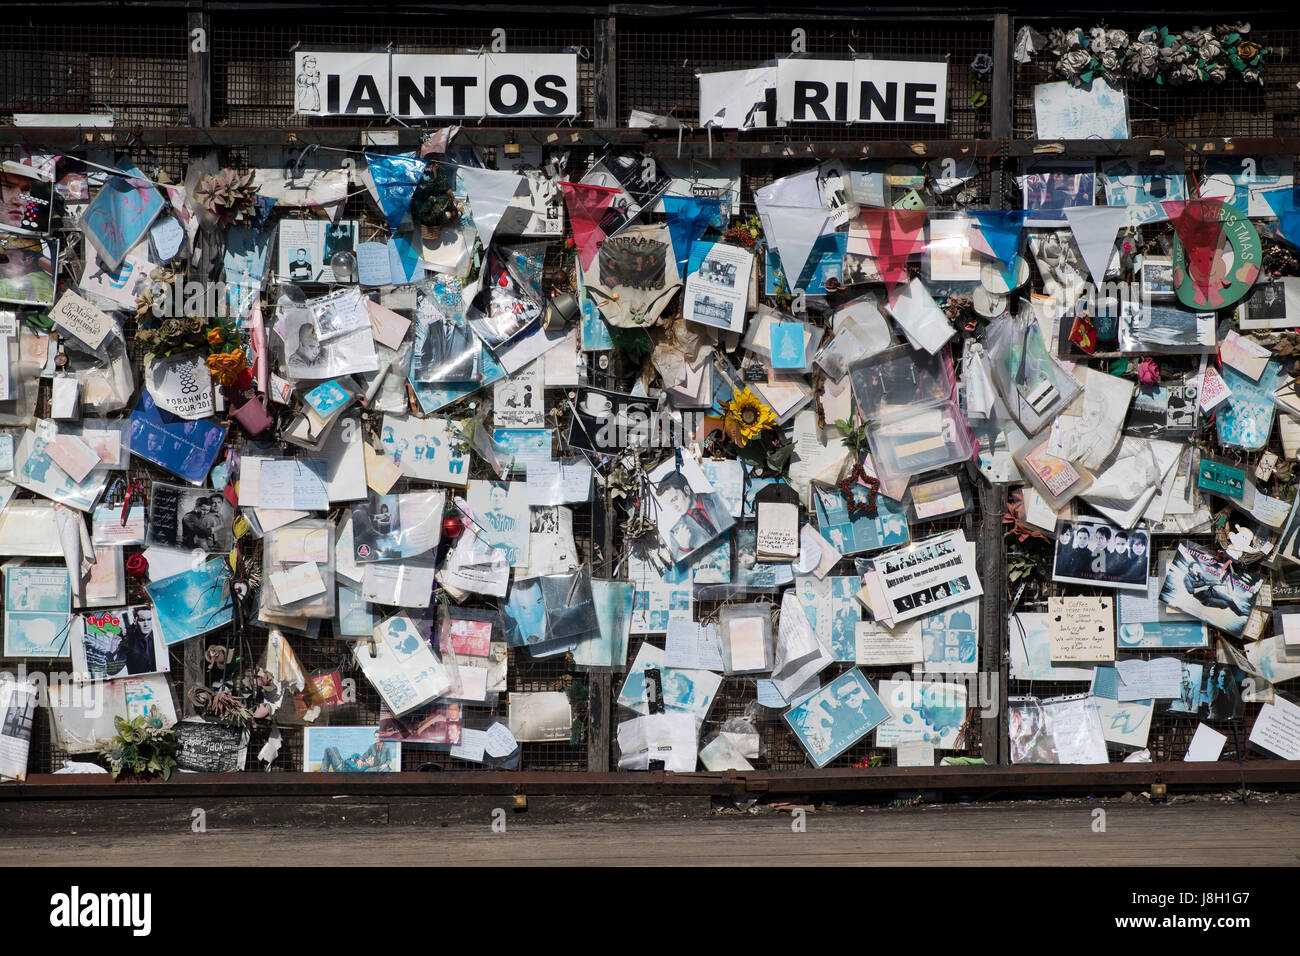 Mauer der Erinnerung im Gedächtnis des fiktiven Torchwood Charakter Ianto Jones am Mermaid Quay, Bucht von Cardiff, Wales. Stockfoto